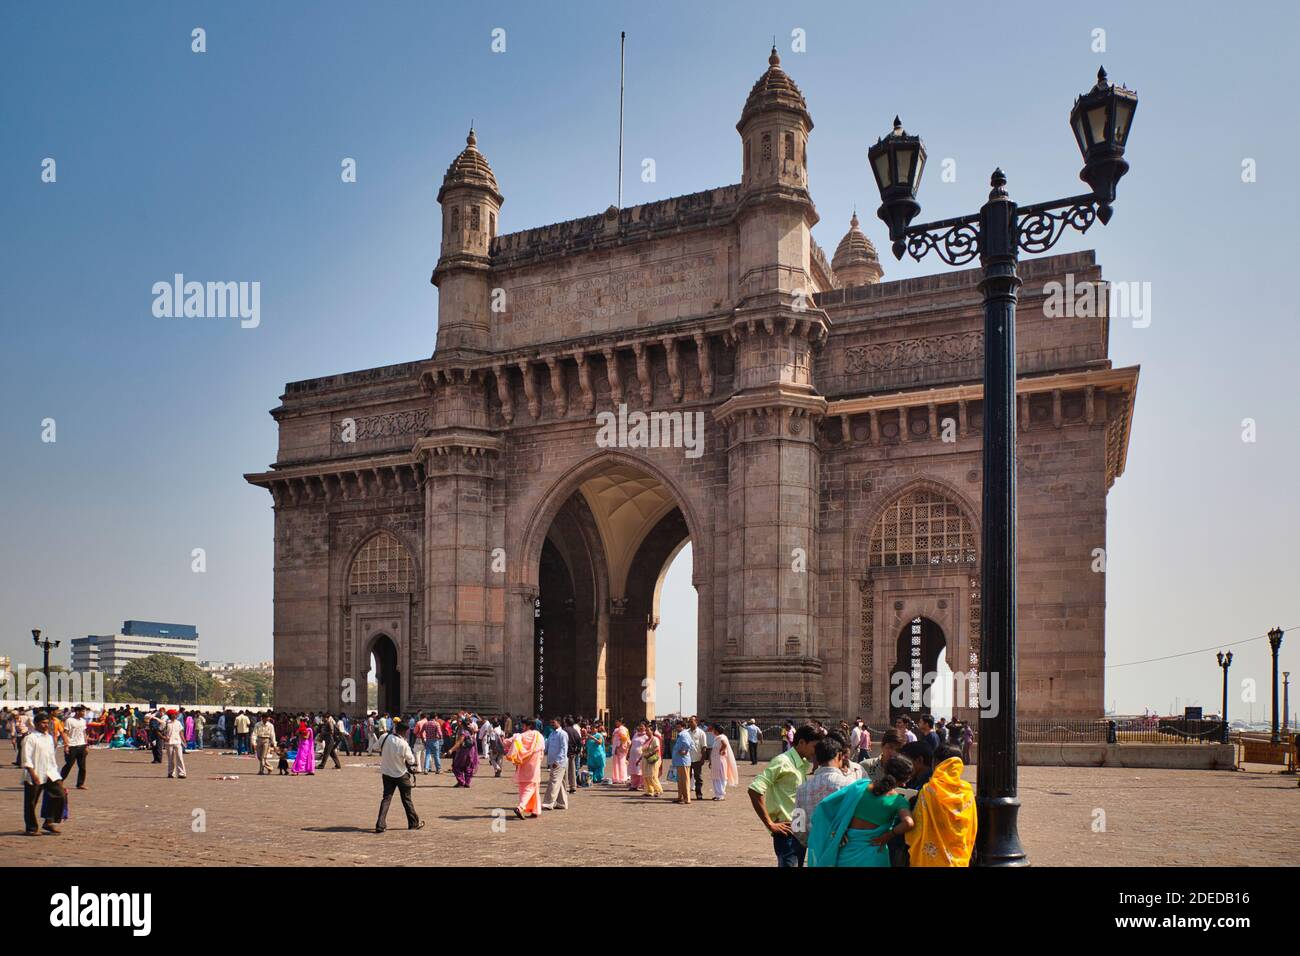 Le célèbre bâtiment en pierre, monument et arcades connu sous le nom de la porte de l'Inde à Mumbai, Maharashtra, Inde, avec des gens se fraiser autour Banque D'Images